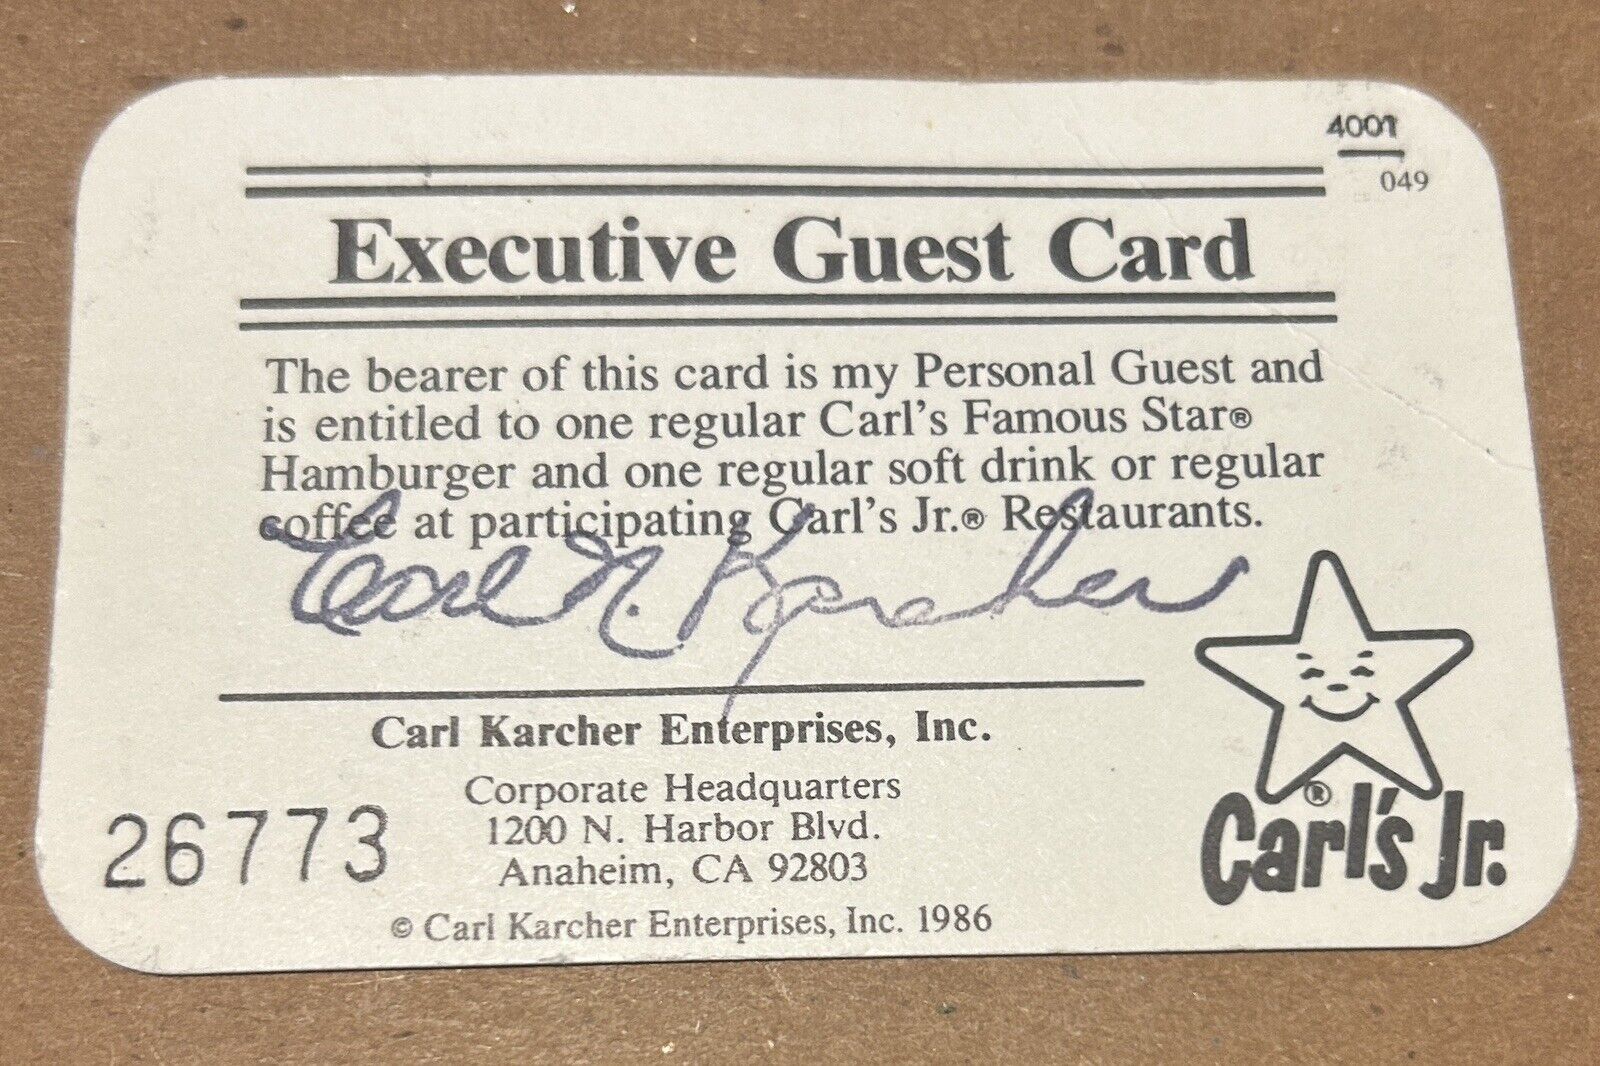 Carls Jr. Executive Guest Card Signed by Carl Karcher - Souvenir Autograph